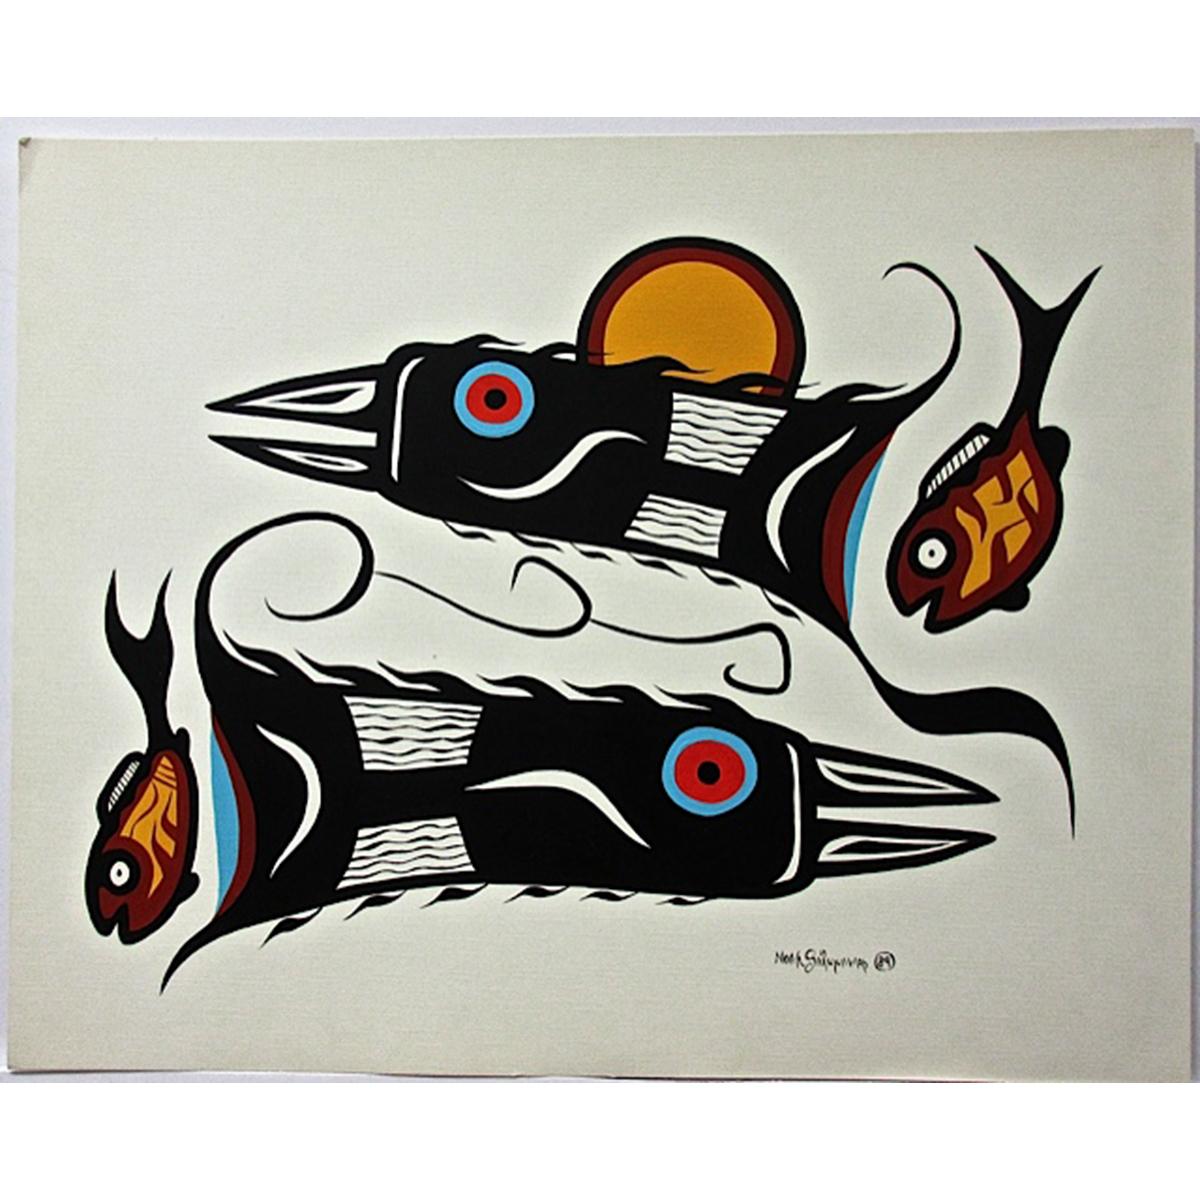 NOAH SAINNAWAP (NATIVE CANADIAN, 1954-2005)  